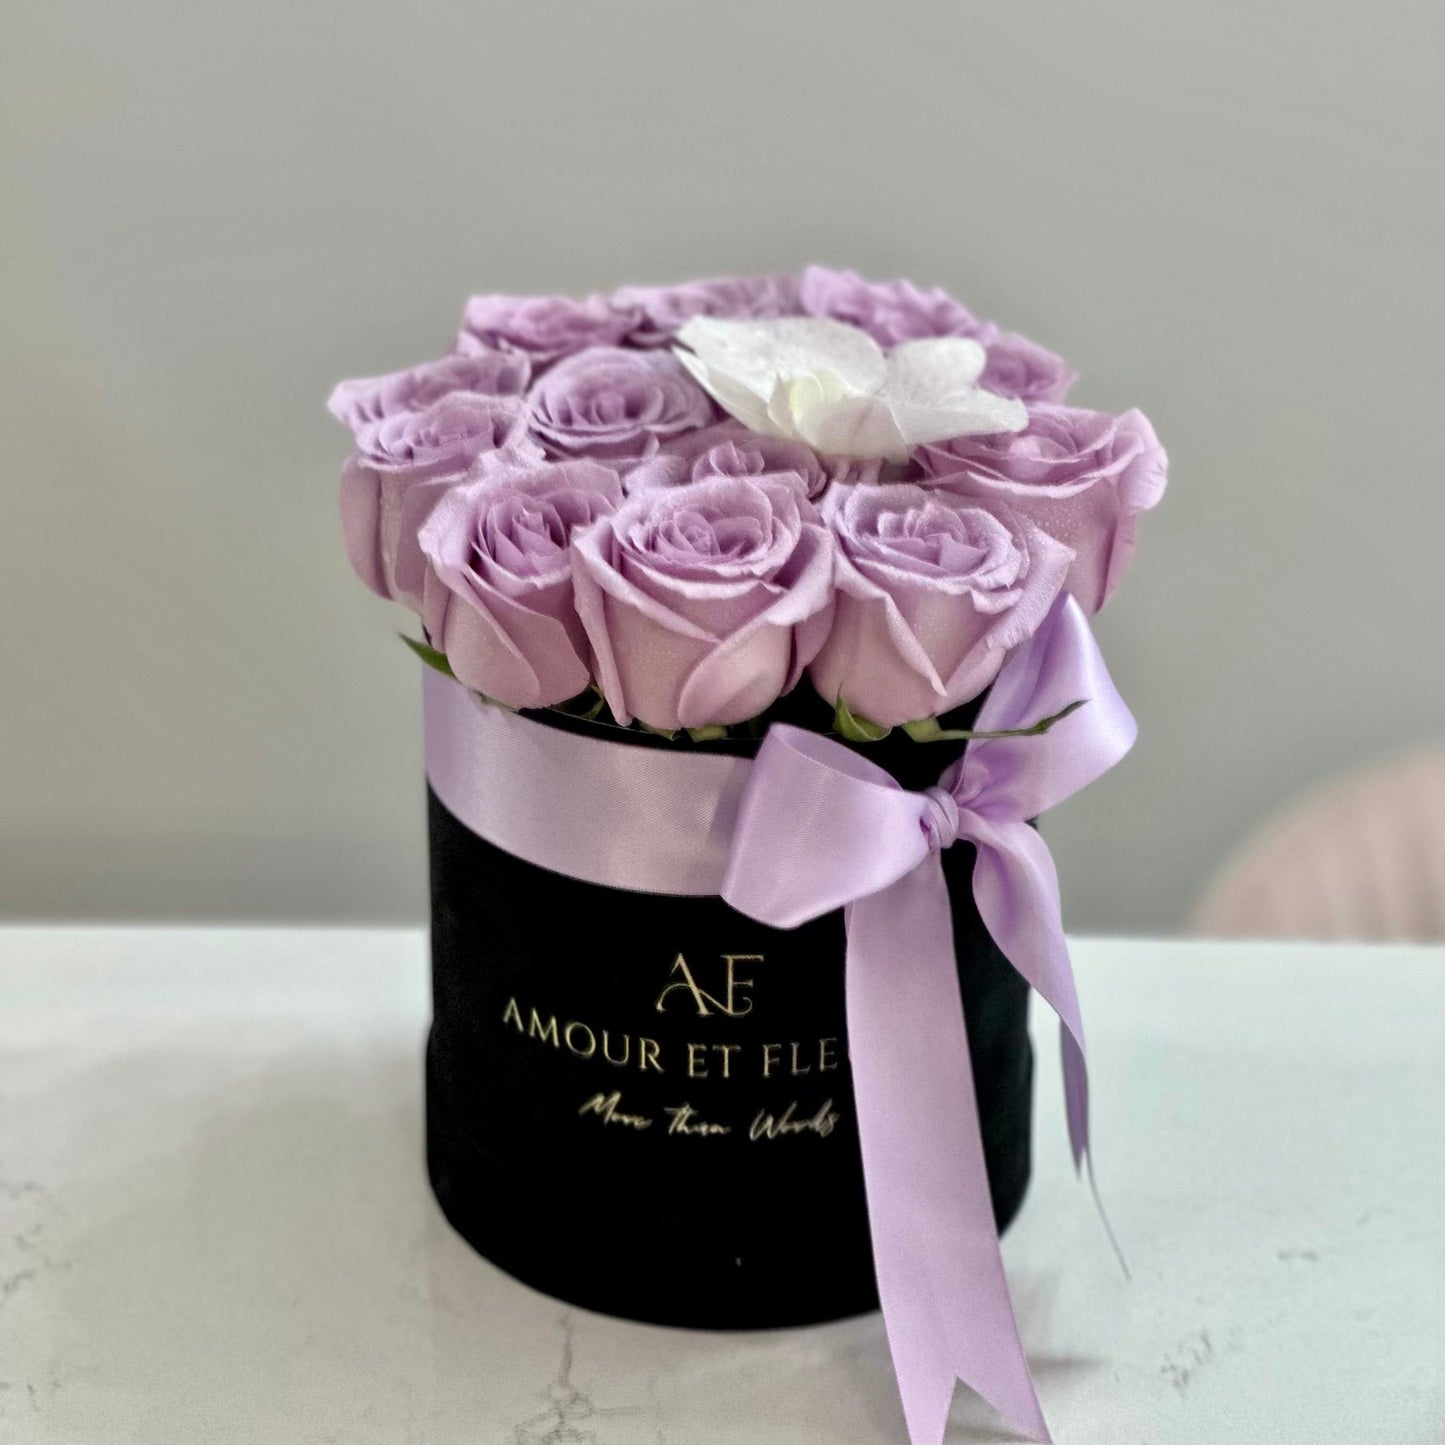 Eleganté XS Floral Arrangement, black box of roses